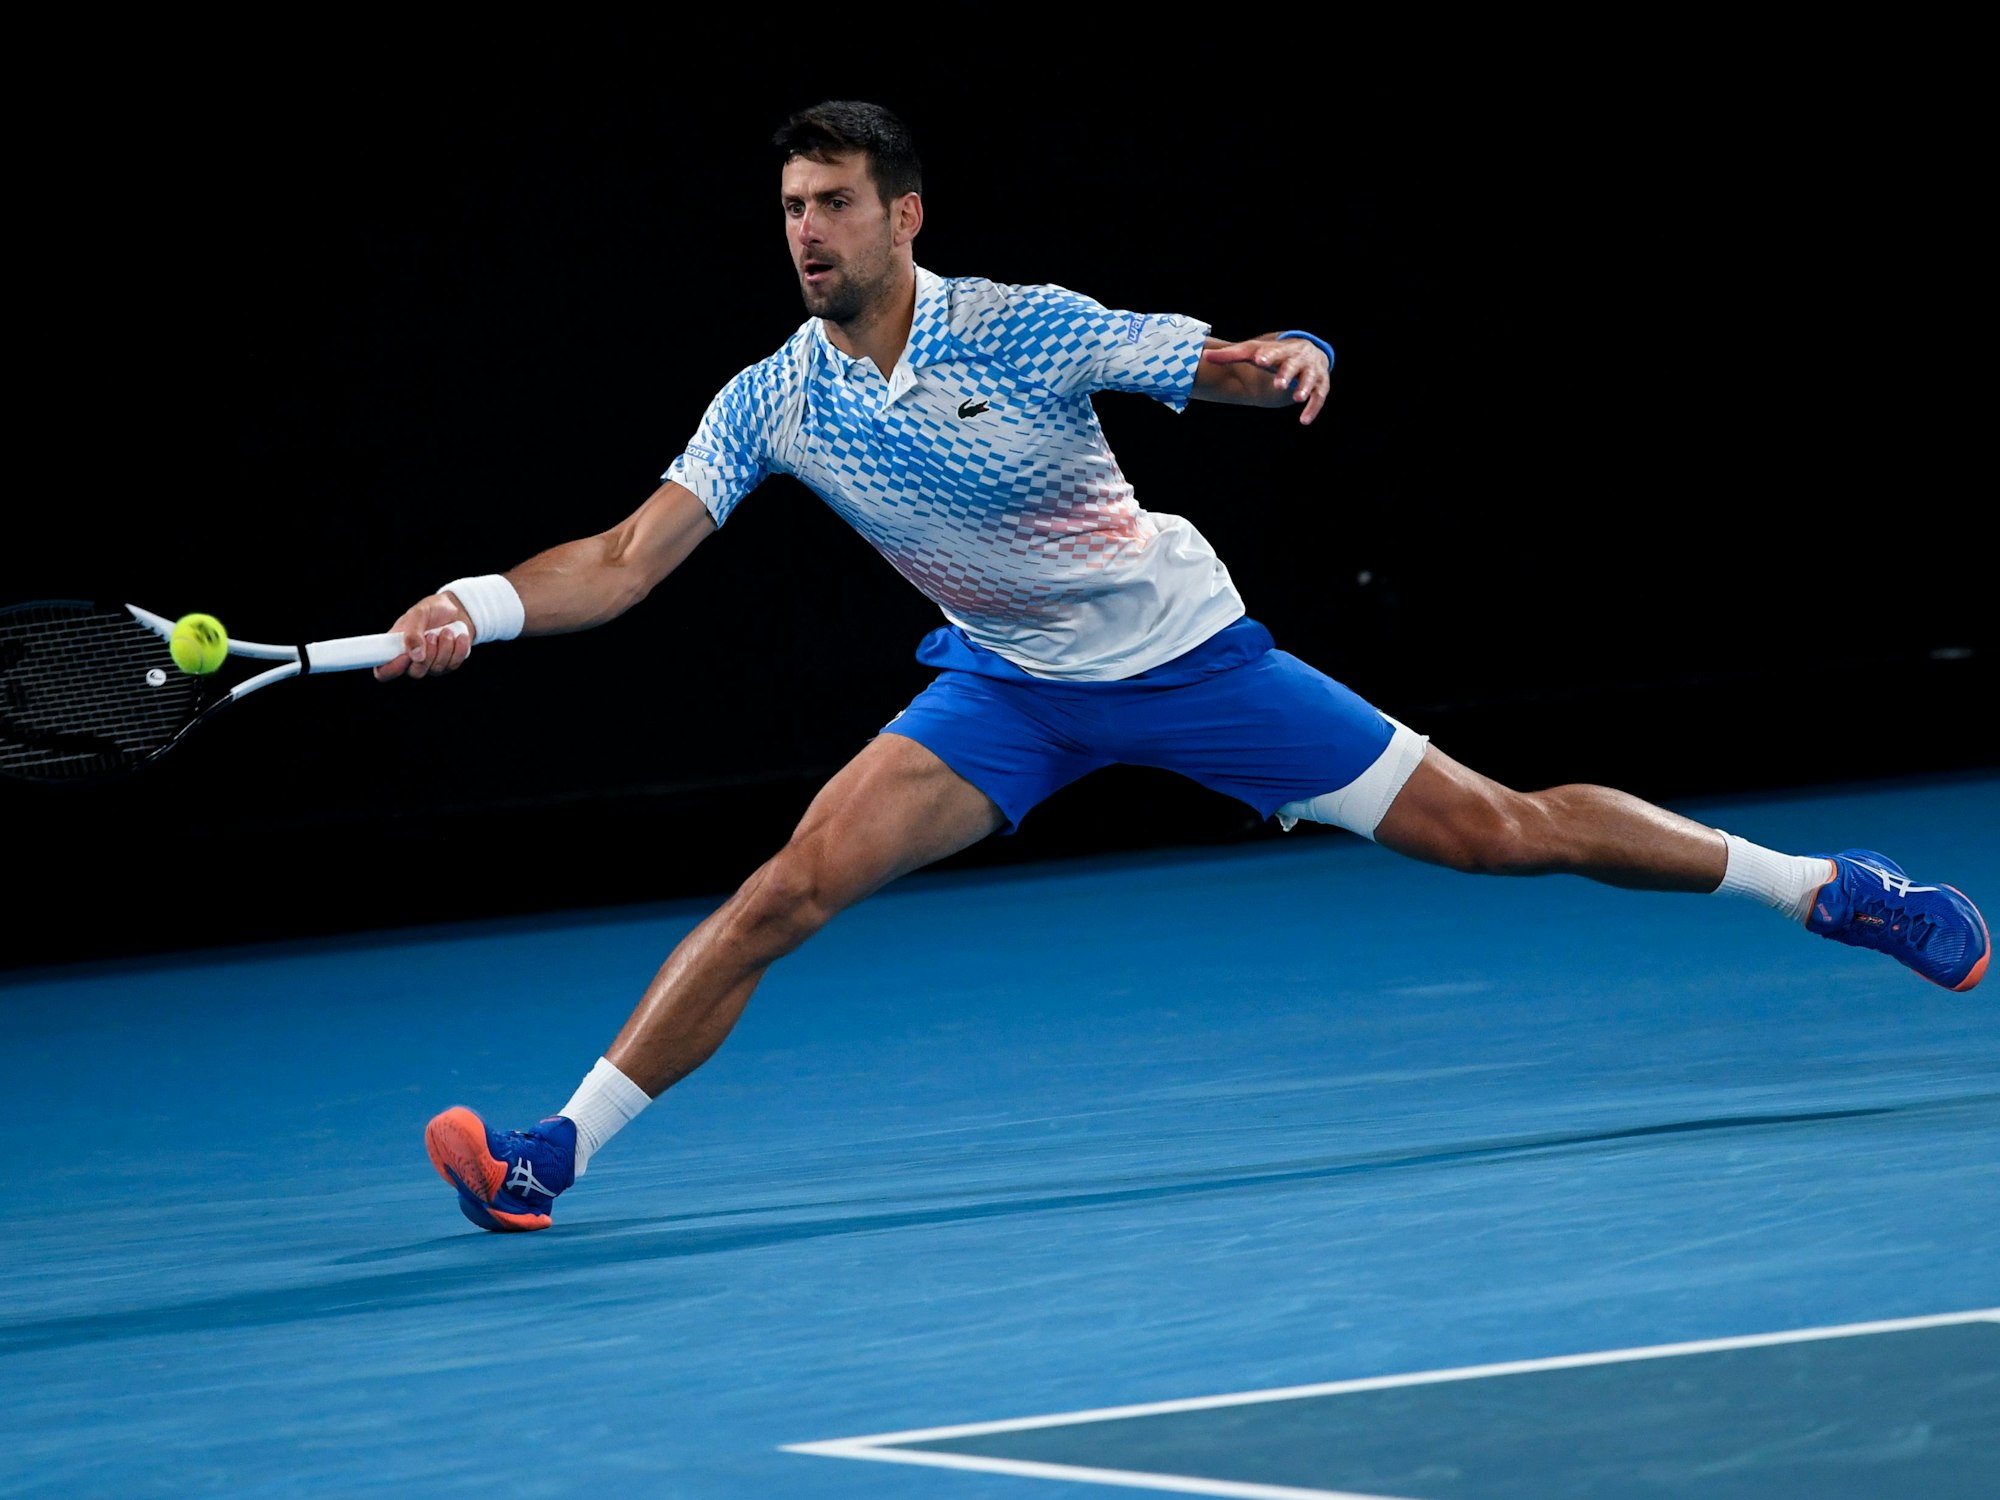 Tennisspieler Novak Djokovic schlägt einen herannahenden Ball.